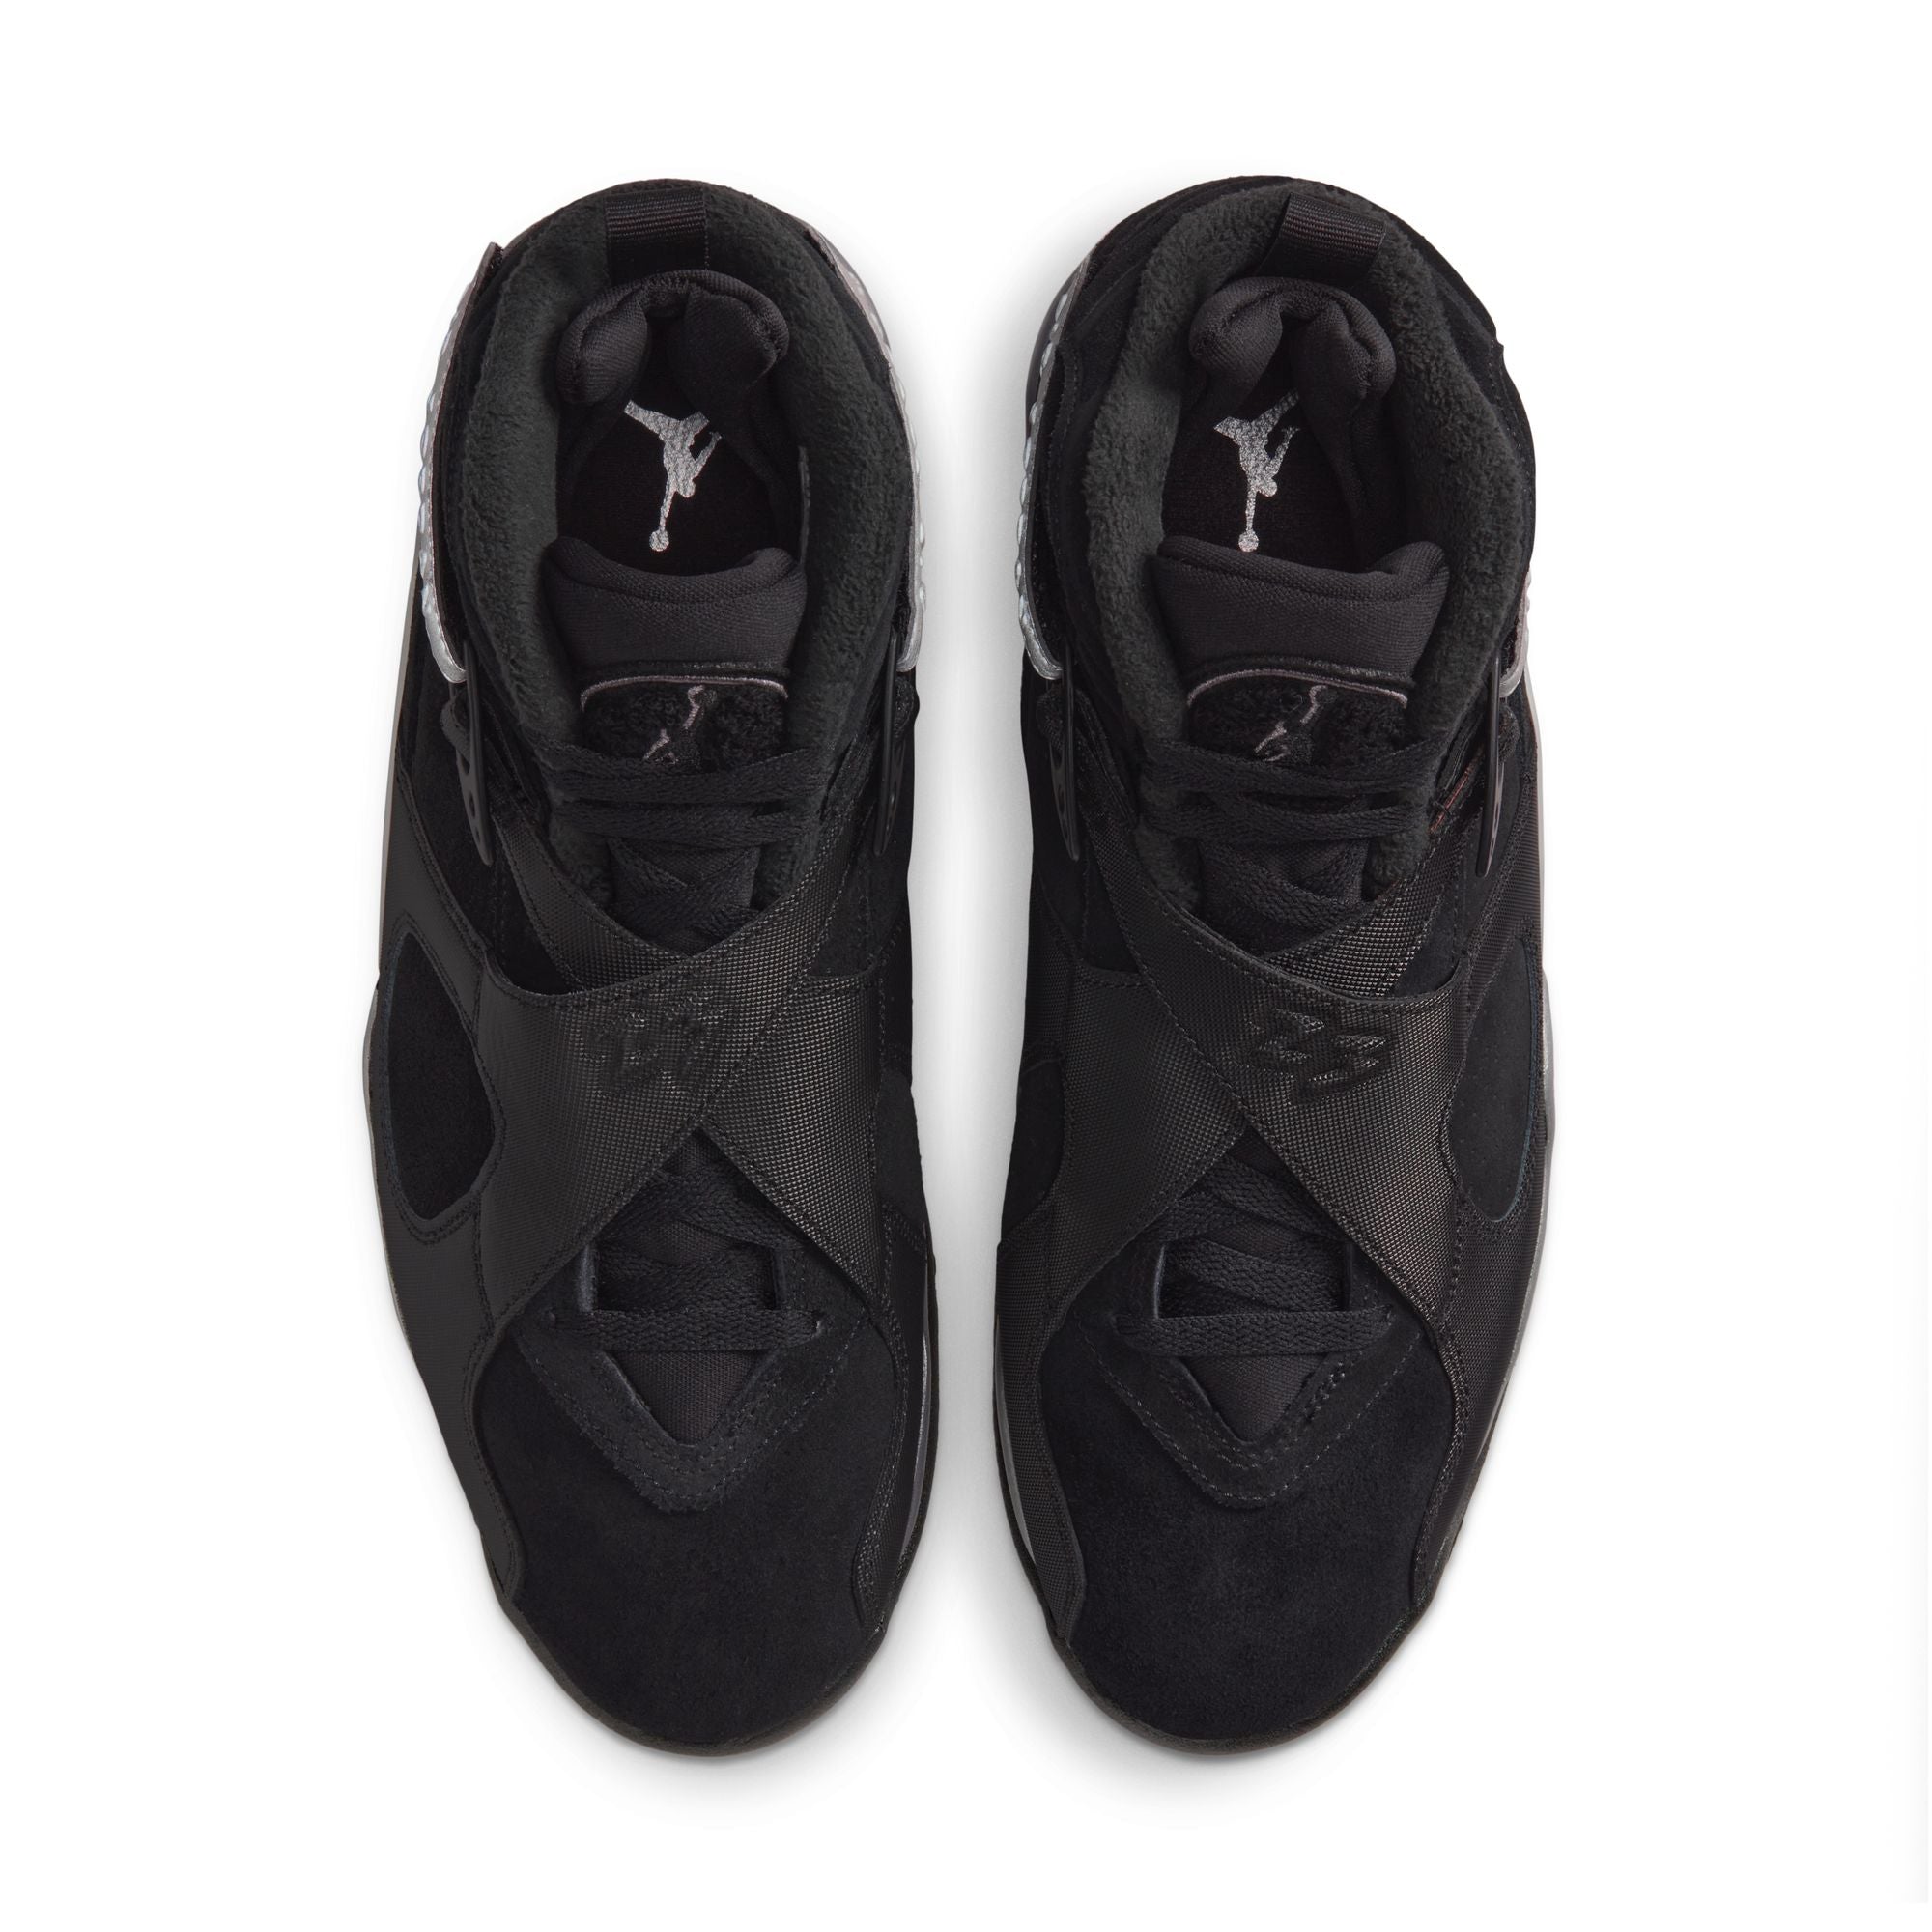 Air Jordan 8 Winterized 'Black'